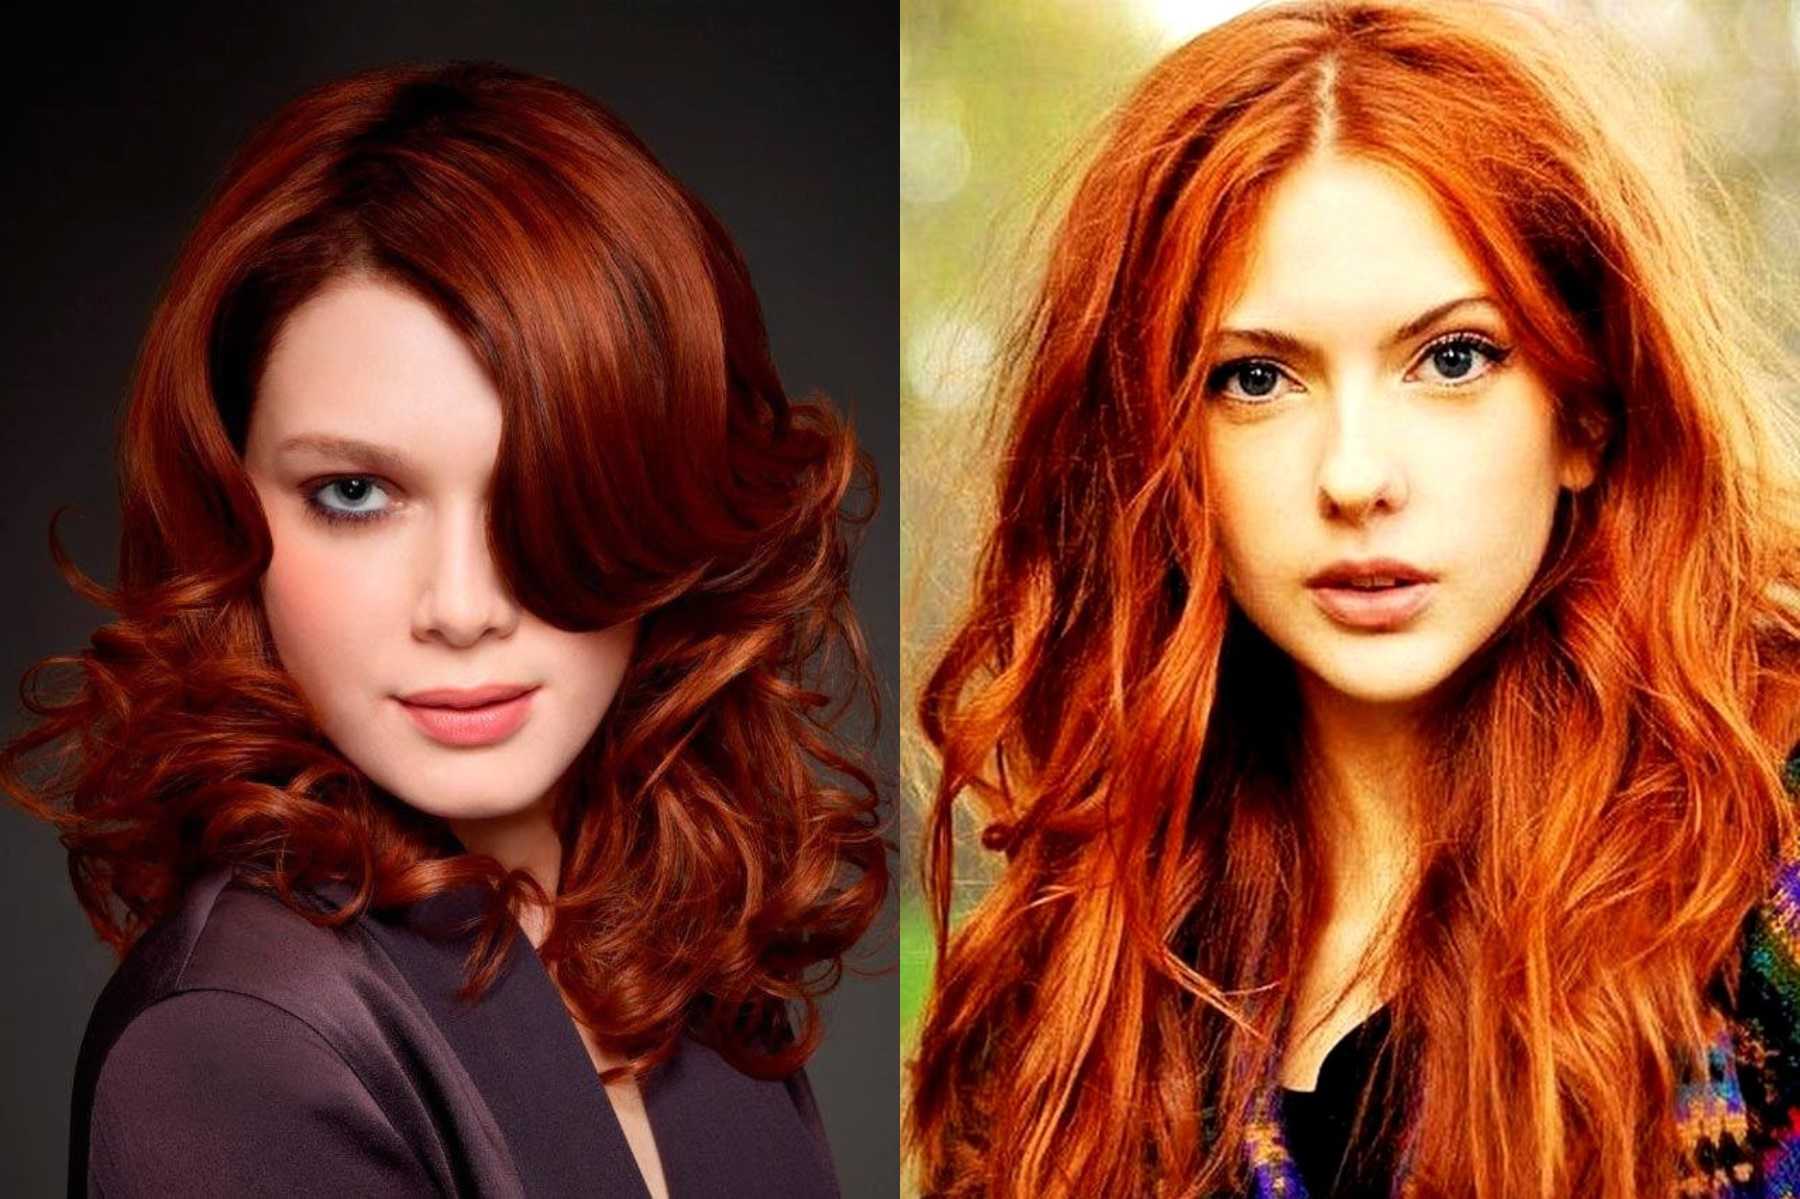 Рыжий цвет волос смотрится очень красиво, но данный оттенок идет не всем Если вы все таки решились на кардинальную смену имиджа, стоит запомнить несколько правил для рыжеволосых